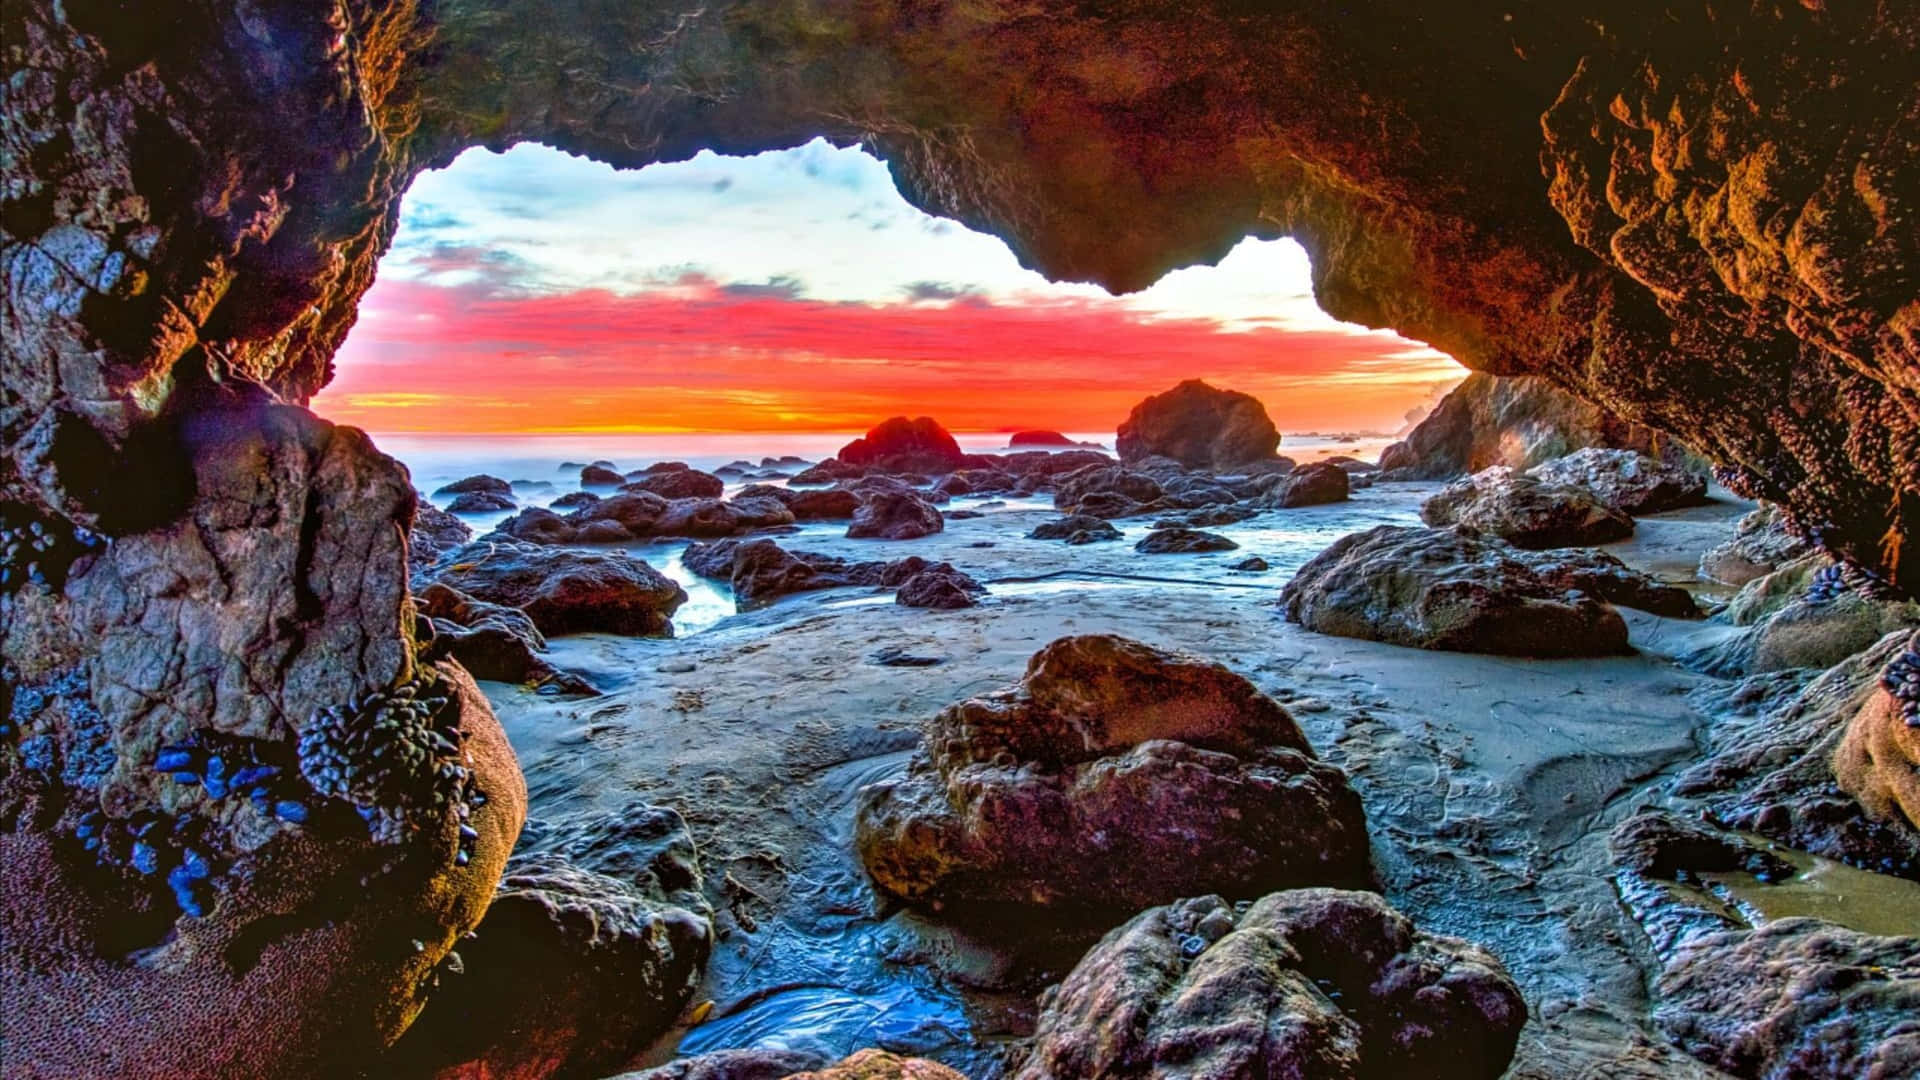 1440p Malibu Beach Cave Background